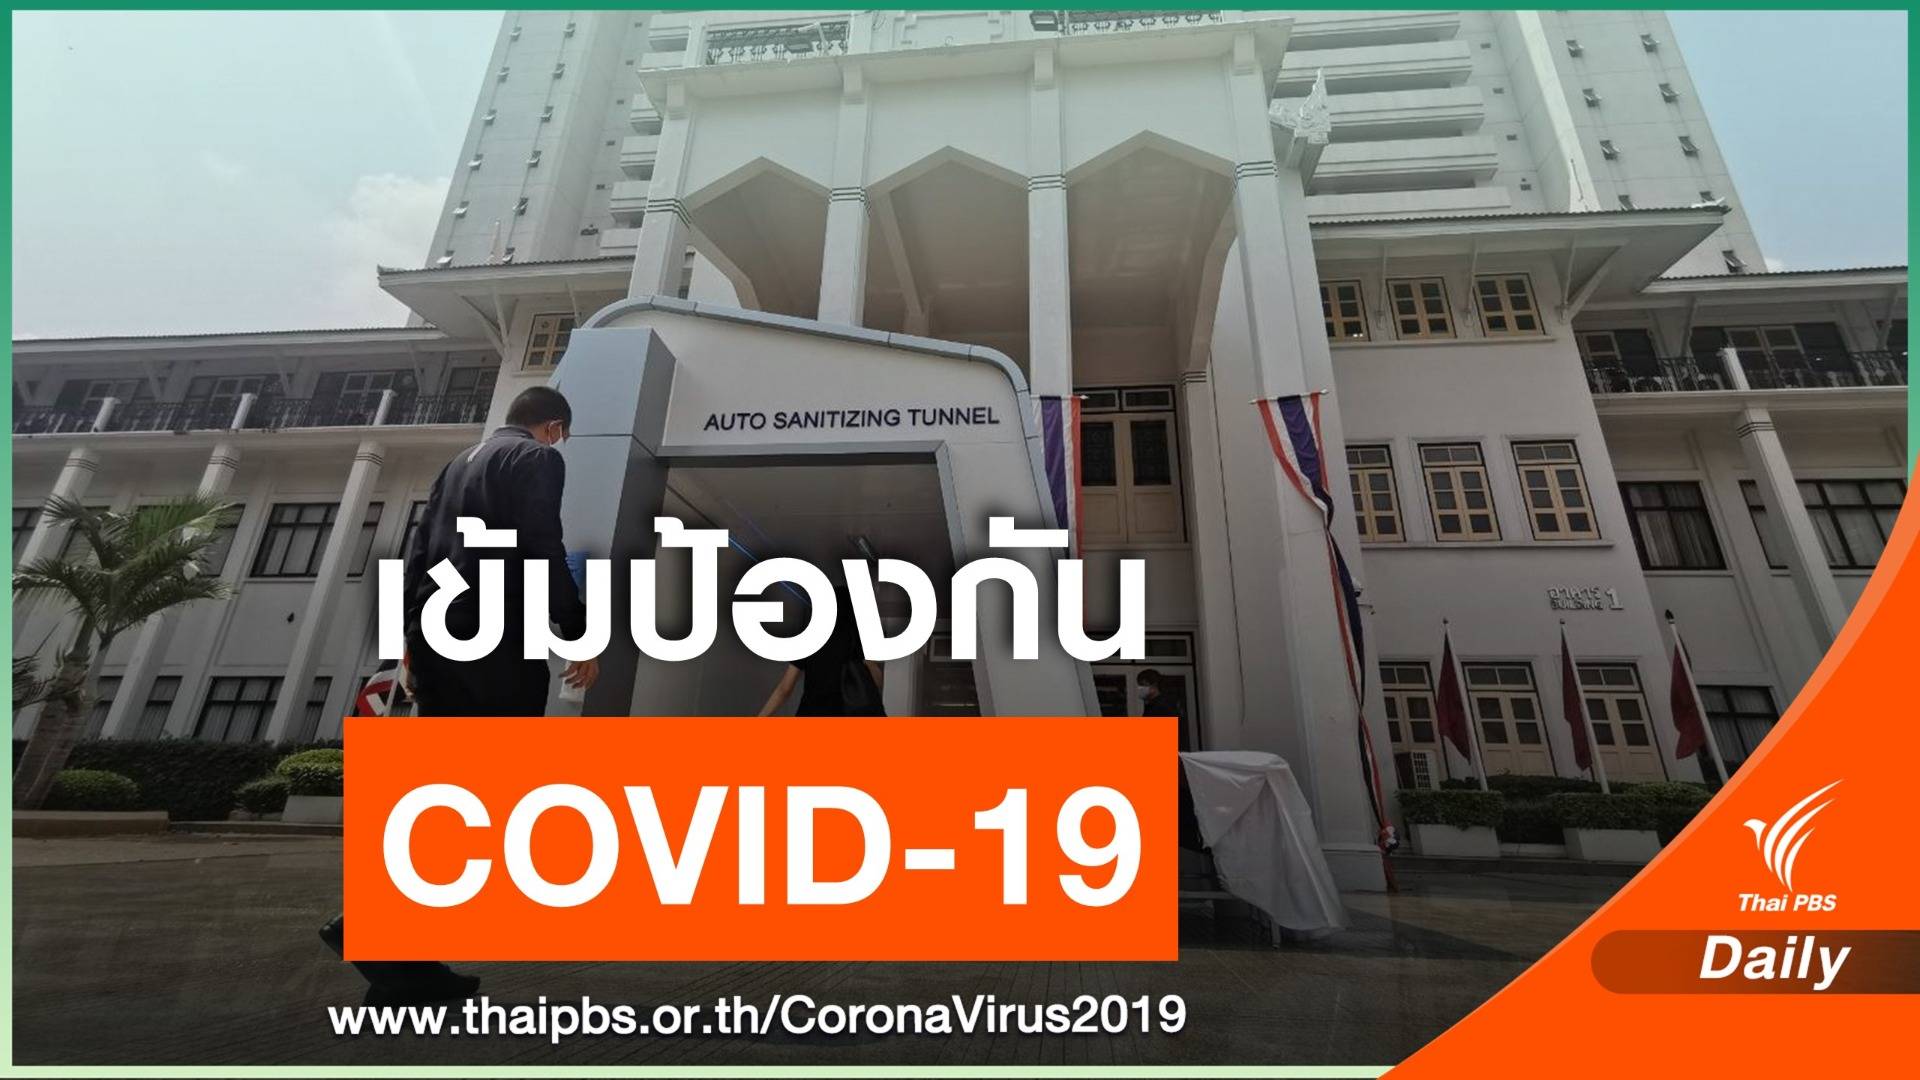 ตร.เริ่มใช้อุโมงค์ฆ่าเชื้อไวรัส COVID-19 วันแรก